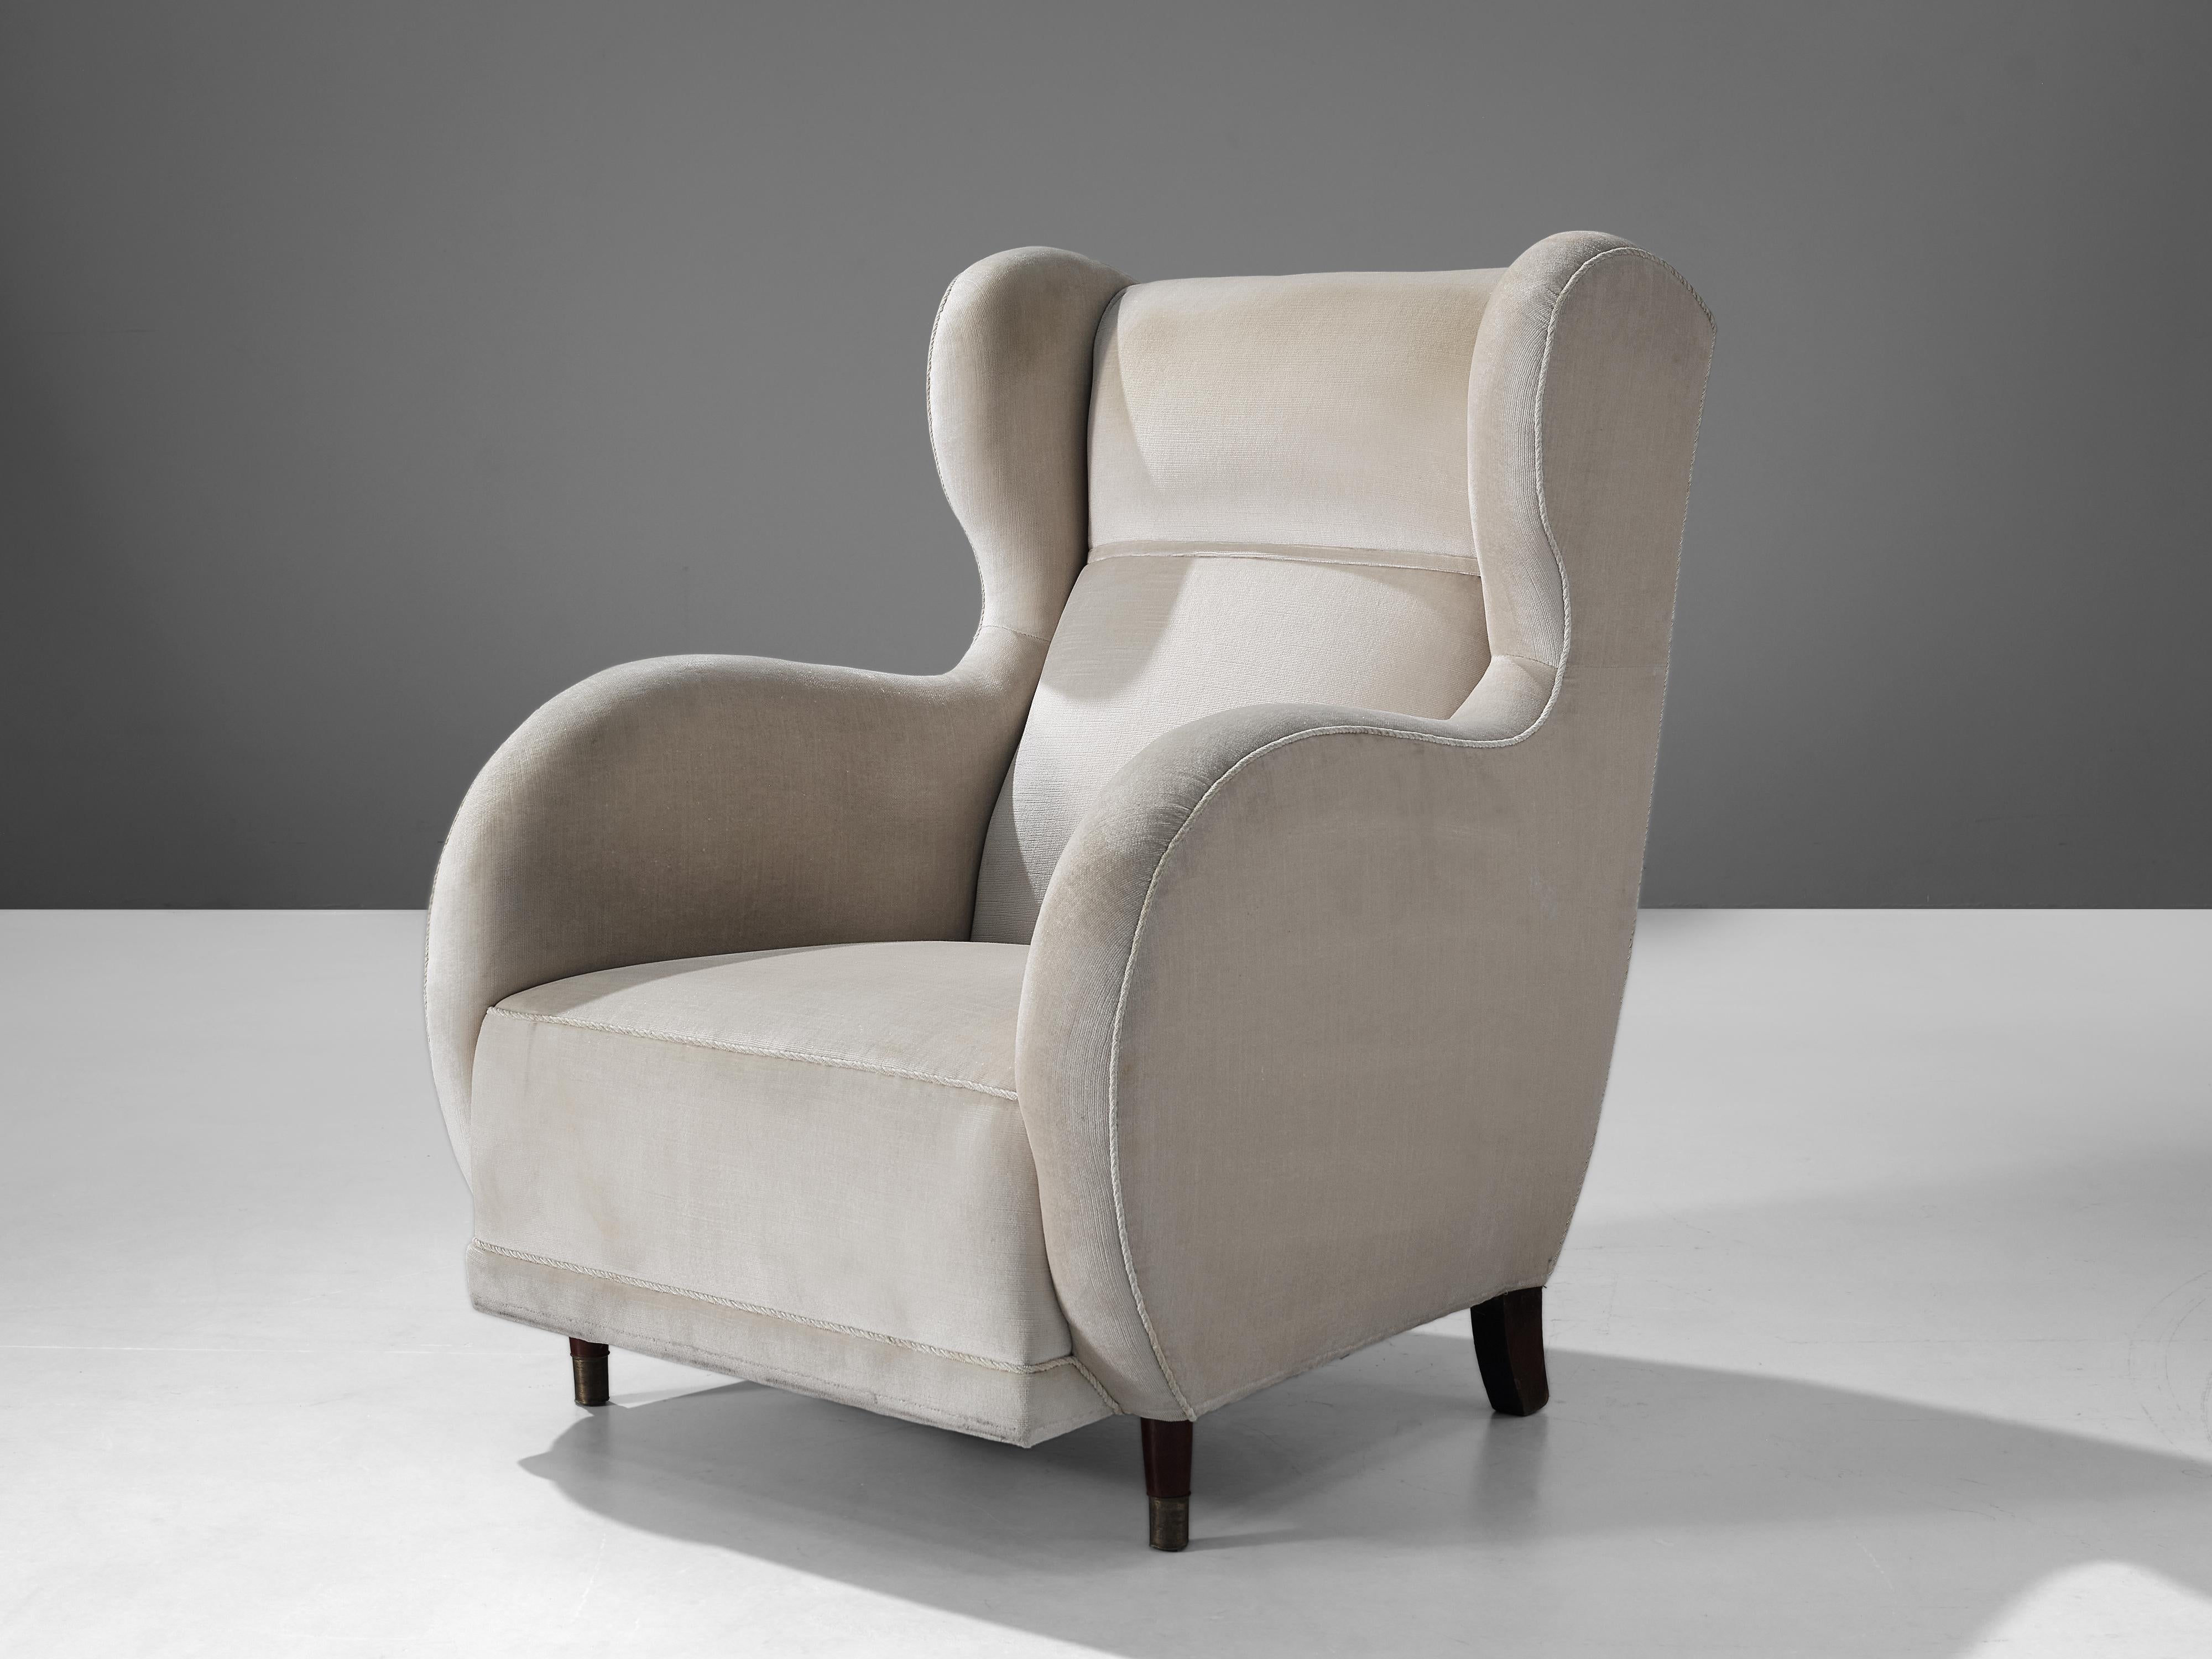 Chaise longue, bois, tissu blanc cassé, Danemark, années 1950

Cet archétype de la chaise à oreilles des années 1950 est à la fois extrêmement confortable et agréable à regarder. Ce fauteuil à pieds en bois présente une aile modeste et des